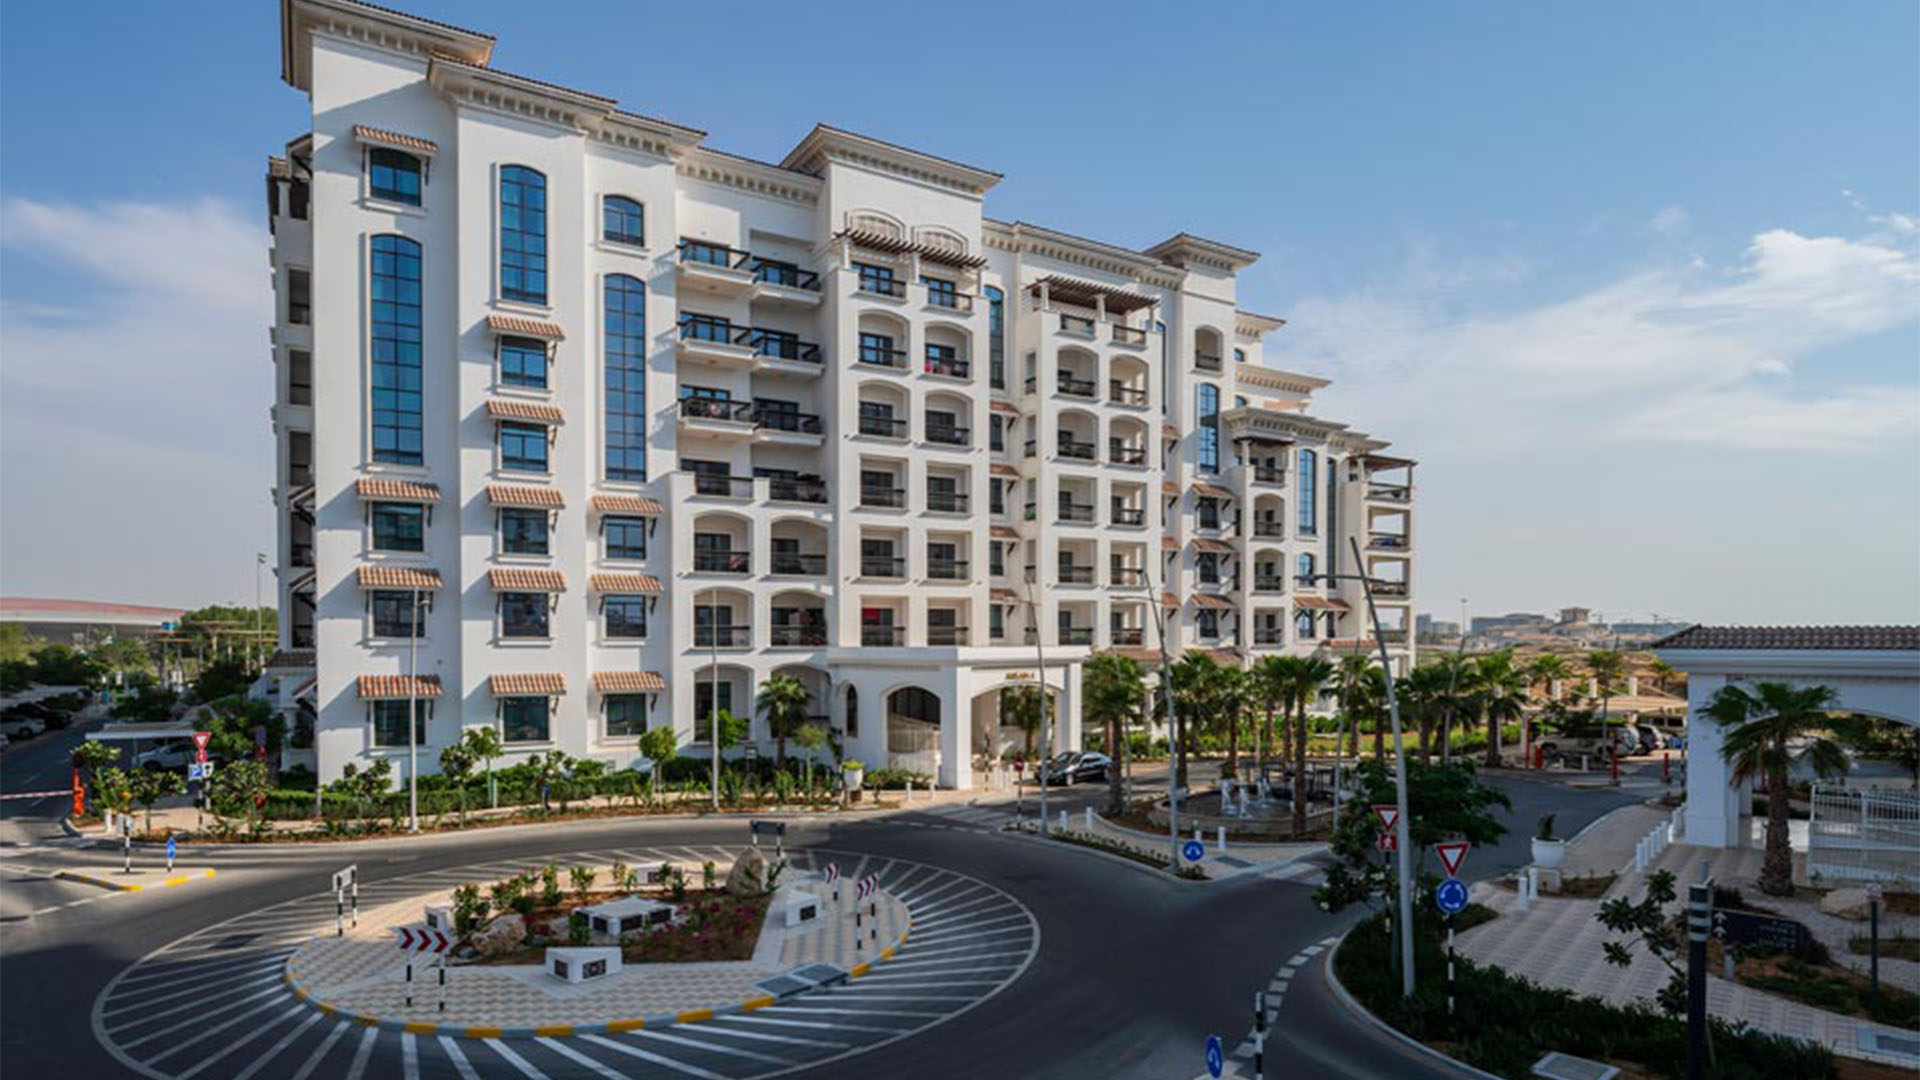 ANSAM by Aldar Properties in Yas Island, Abu Dhabi, UAE